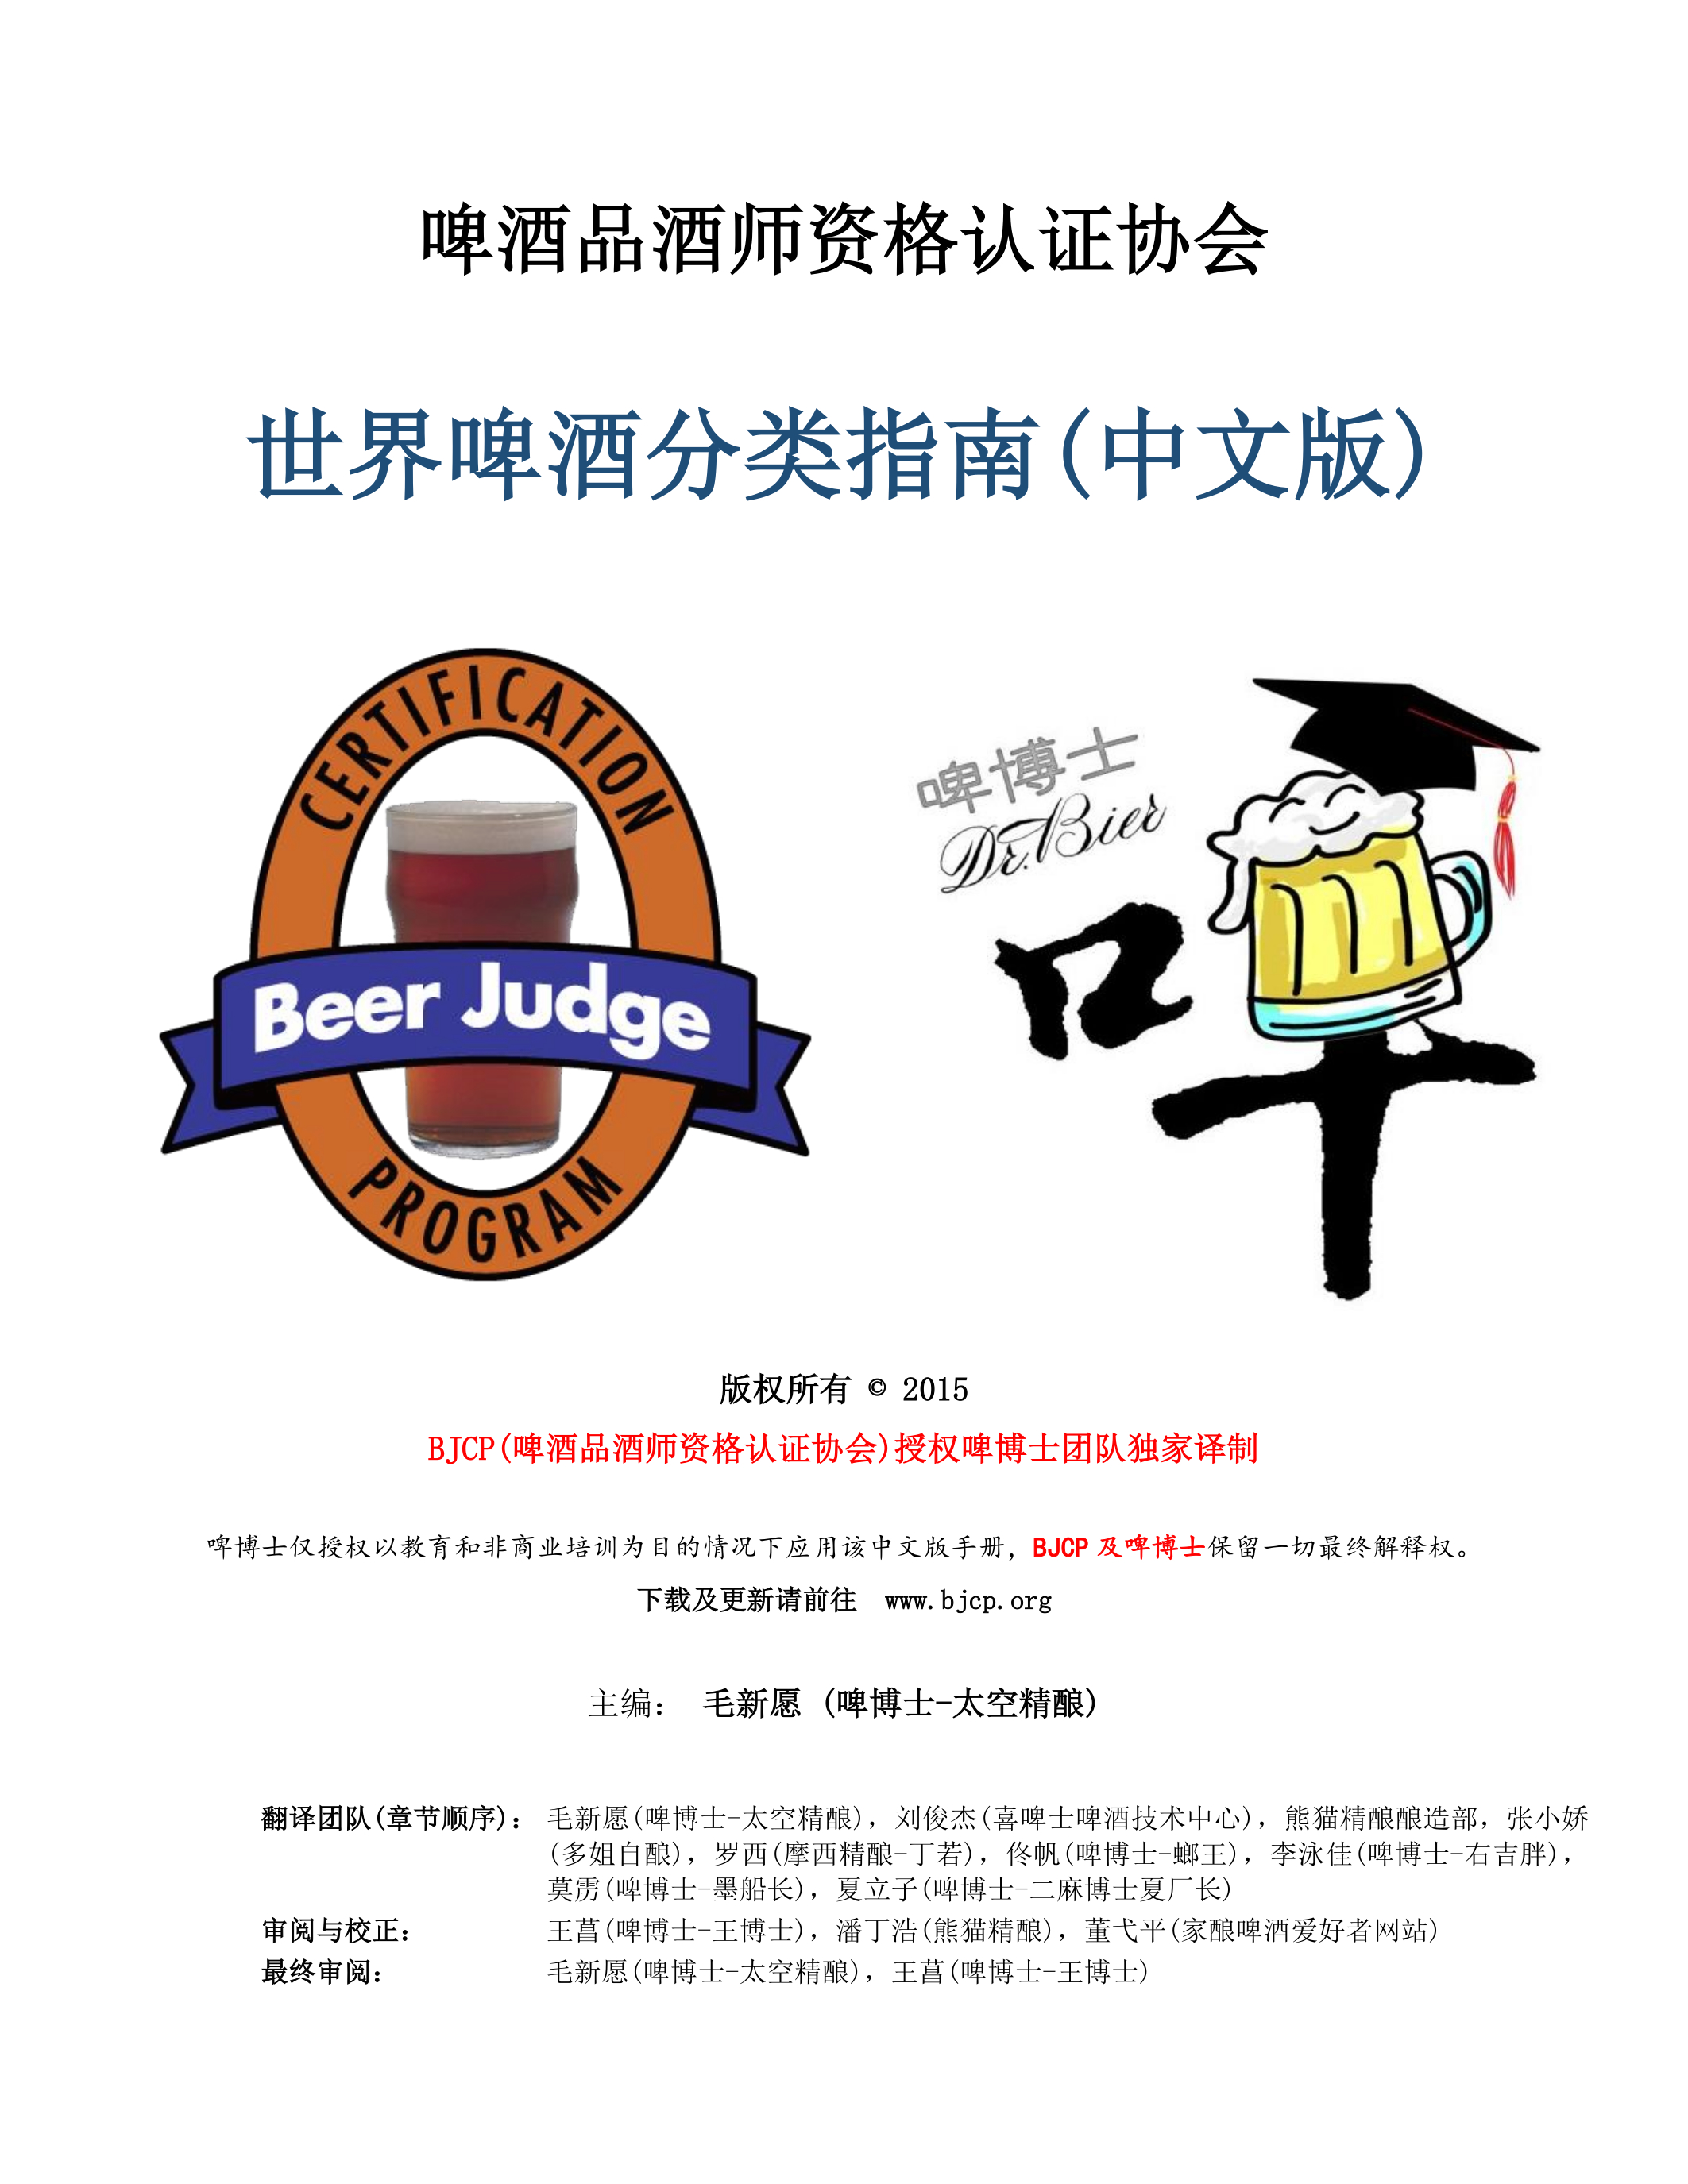 BJCP世界啤酒分类指南中文2015版(1) 封面